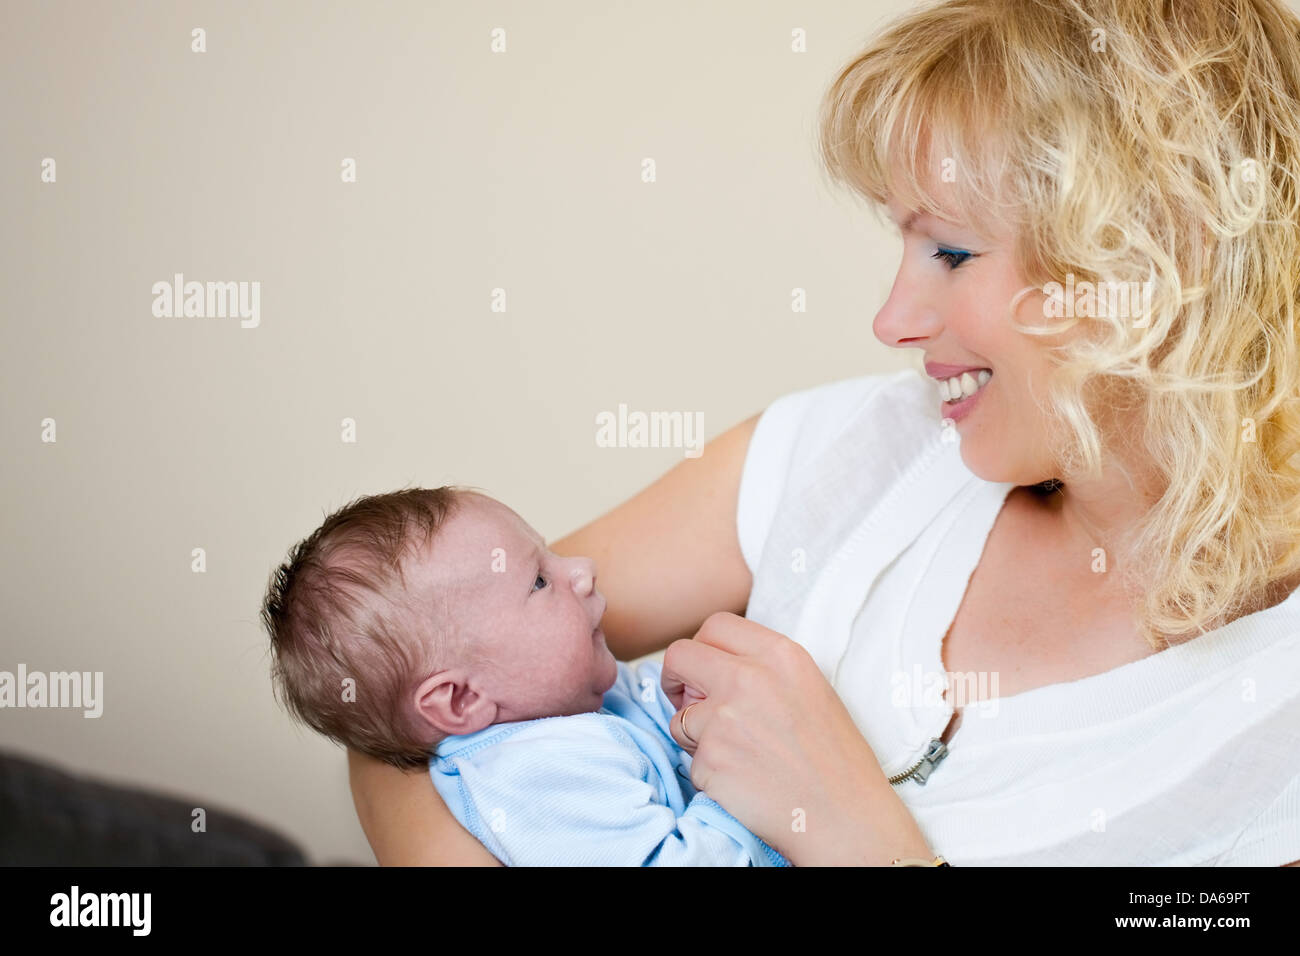 Junge Frau mit einem Neugeborenen baby Stockfoto